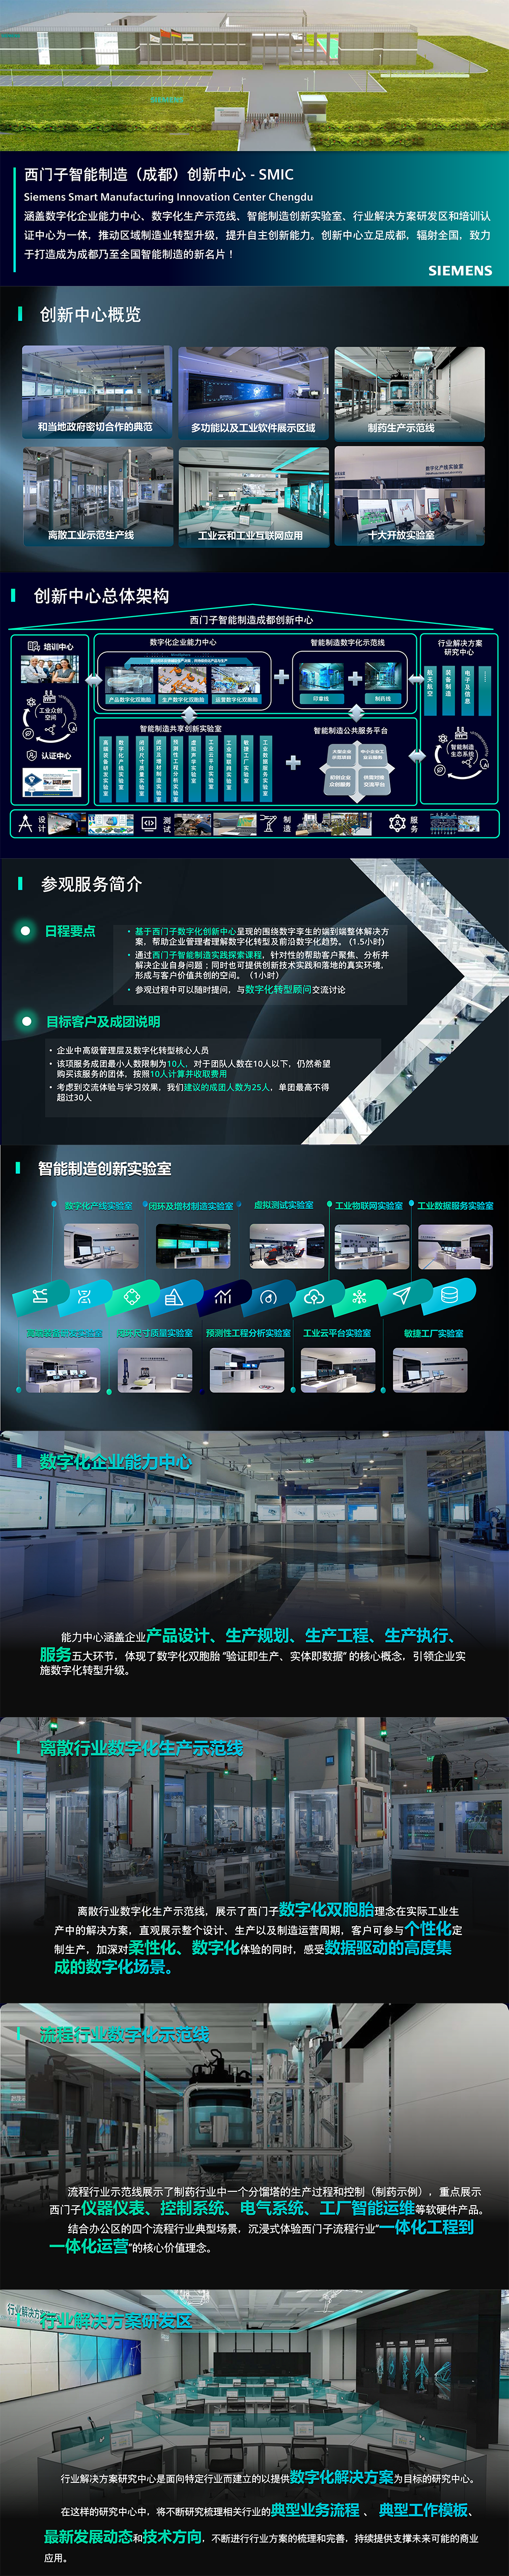 Digital Journey@SMIC Chengdu on DCJ V2-1.png